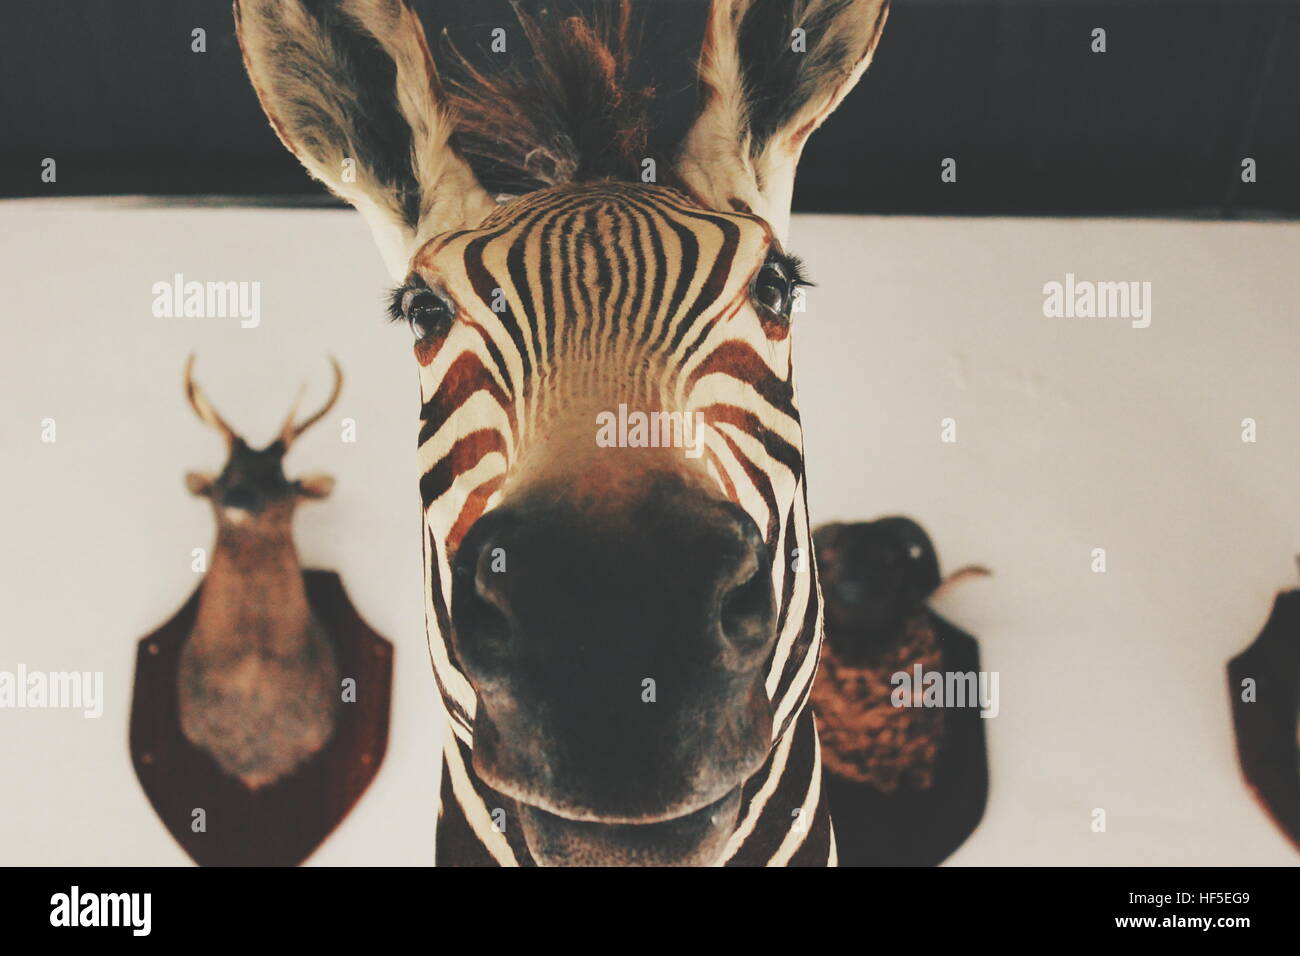 A statue of a zebra head close up. Stock Photo